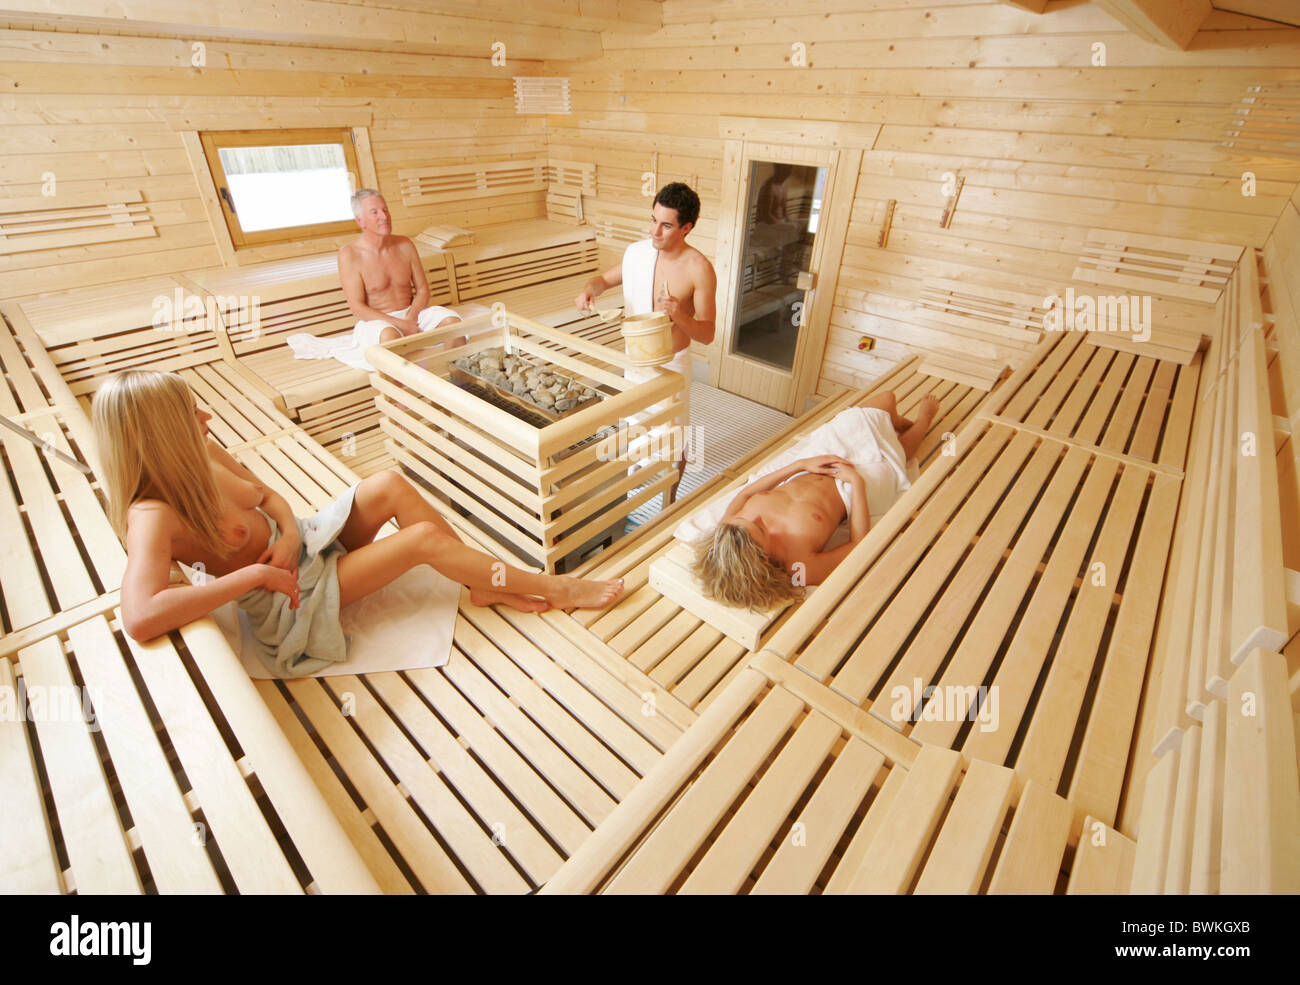 Wooden Sauna Stockfotos Und Bilder Kaufen Alamy